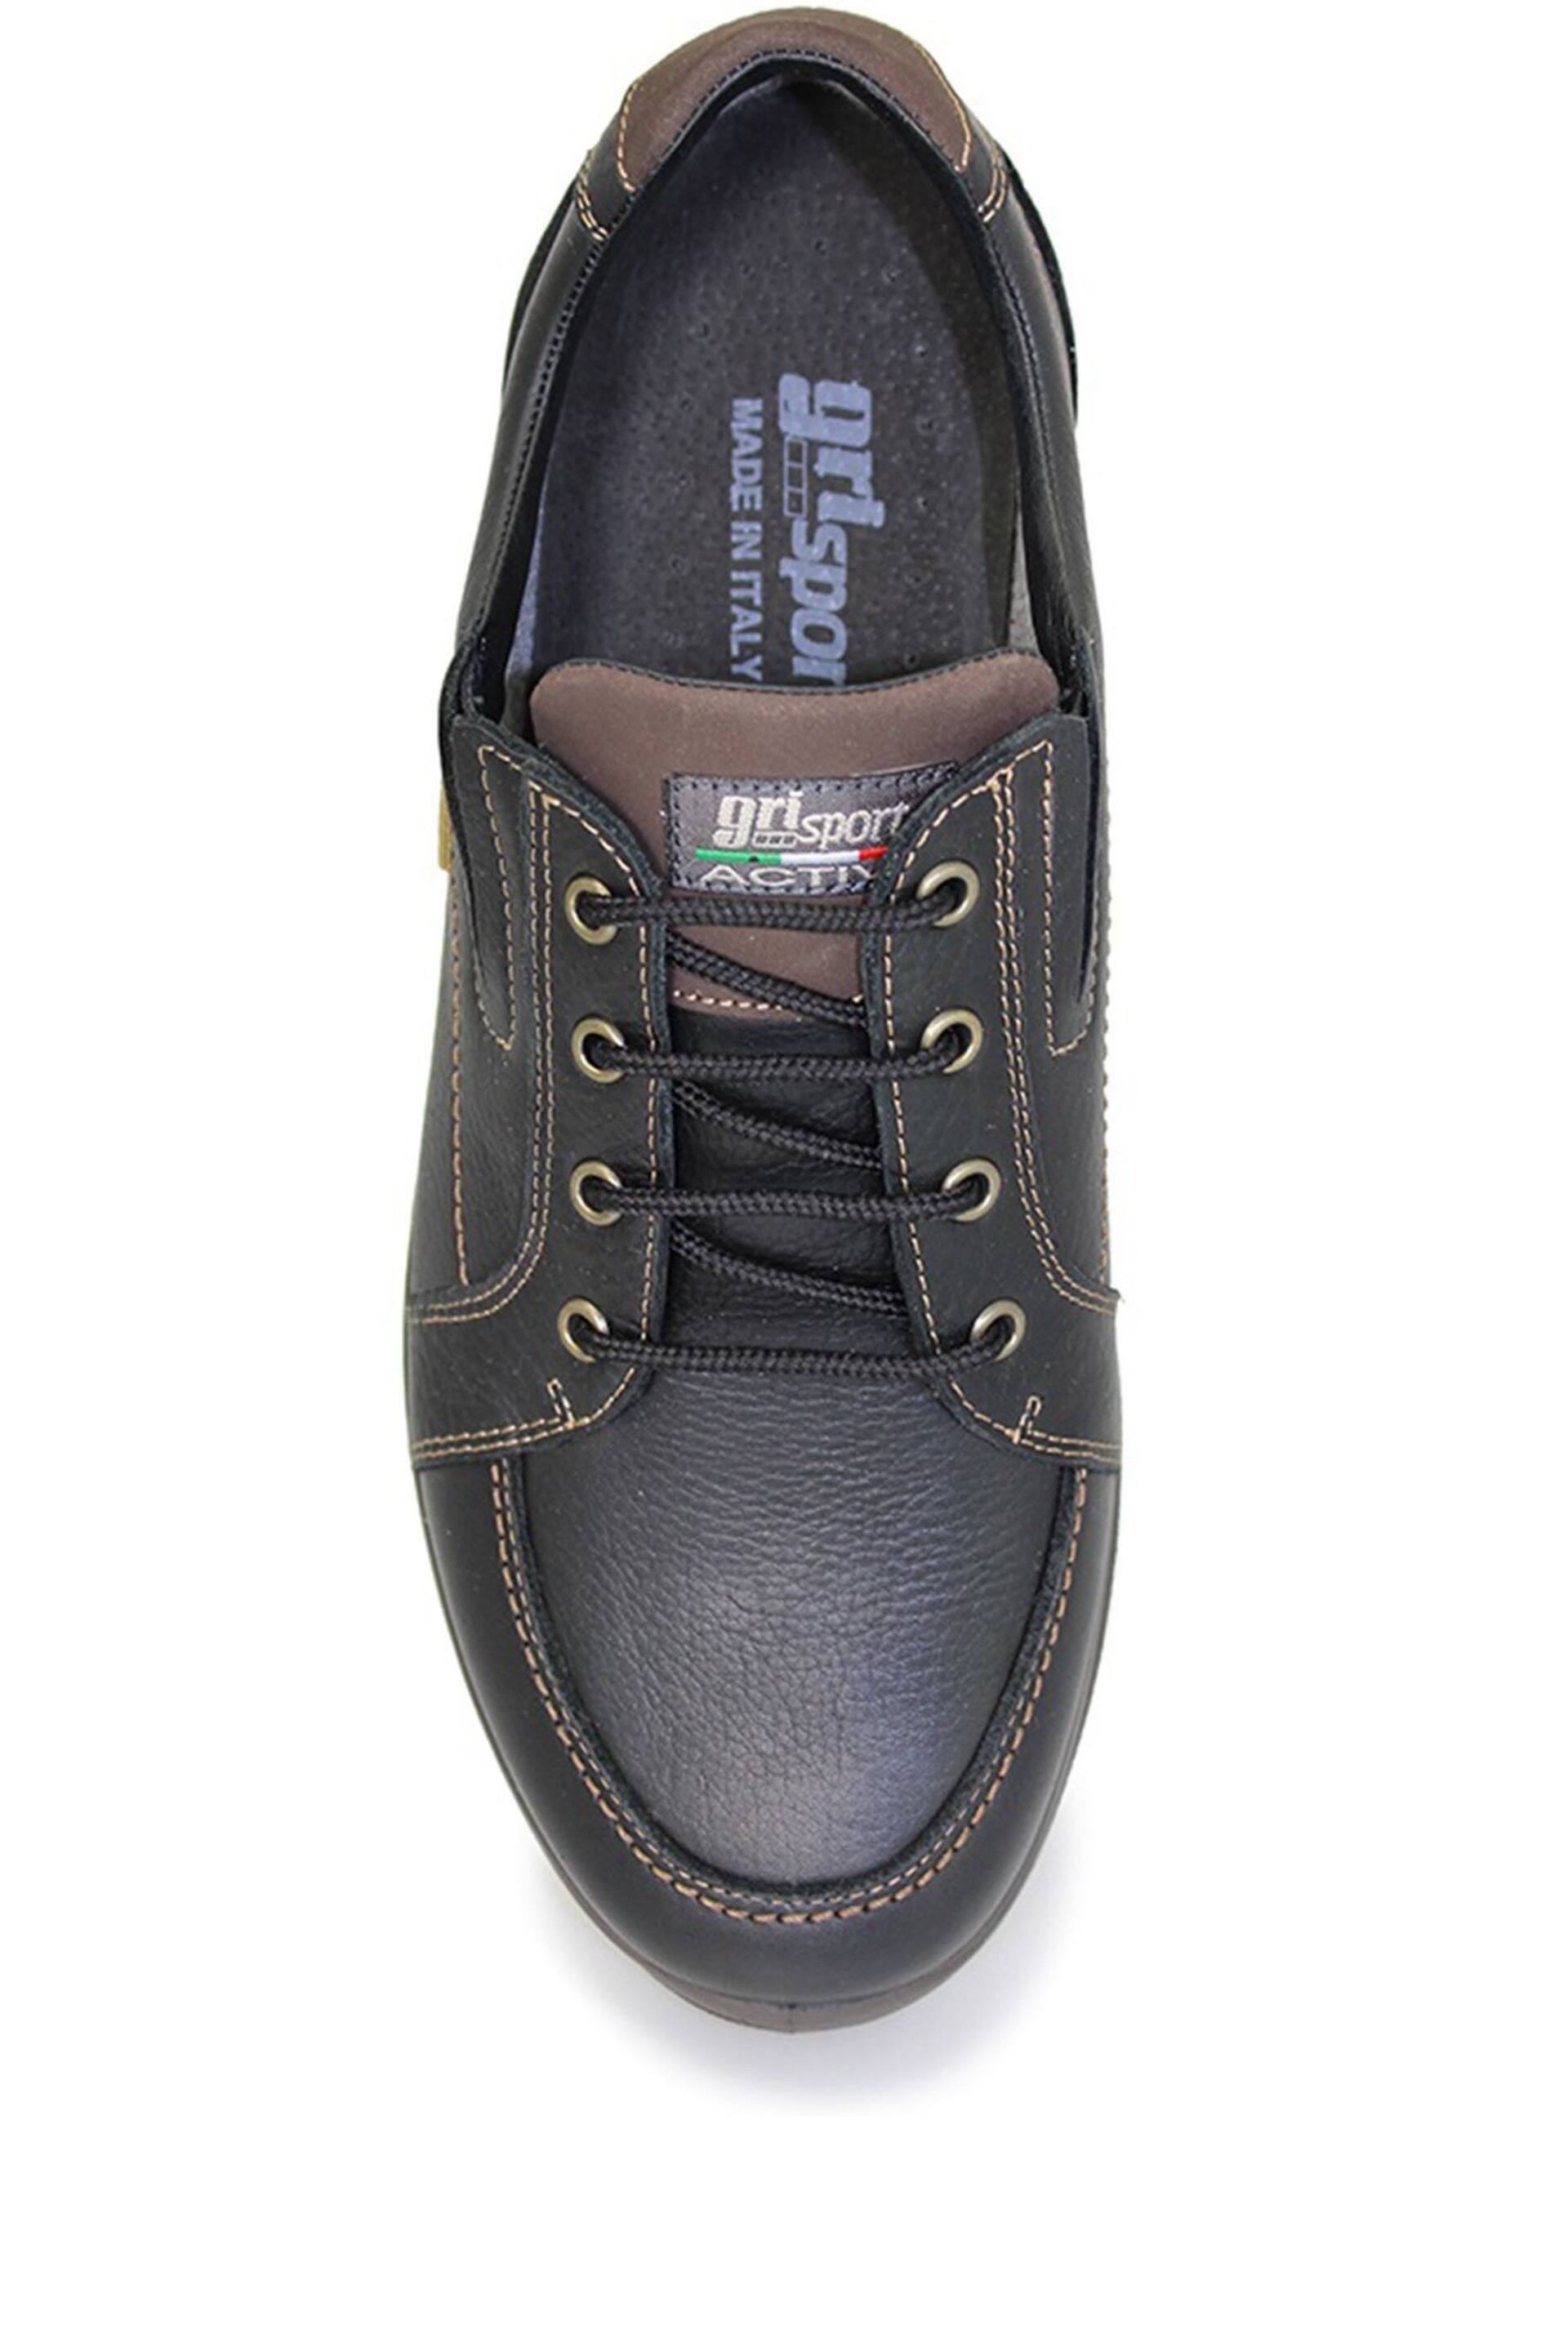 Grisport Ayr Black Comfort Shoes - Image 4 of 4